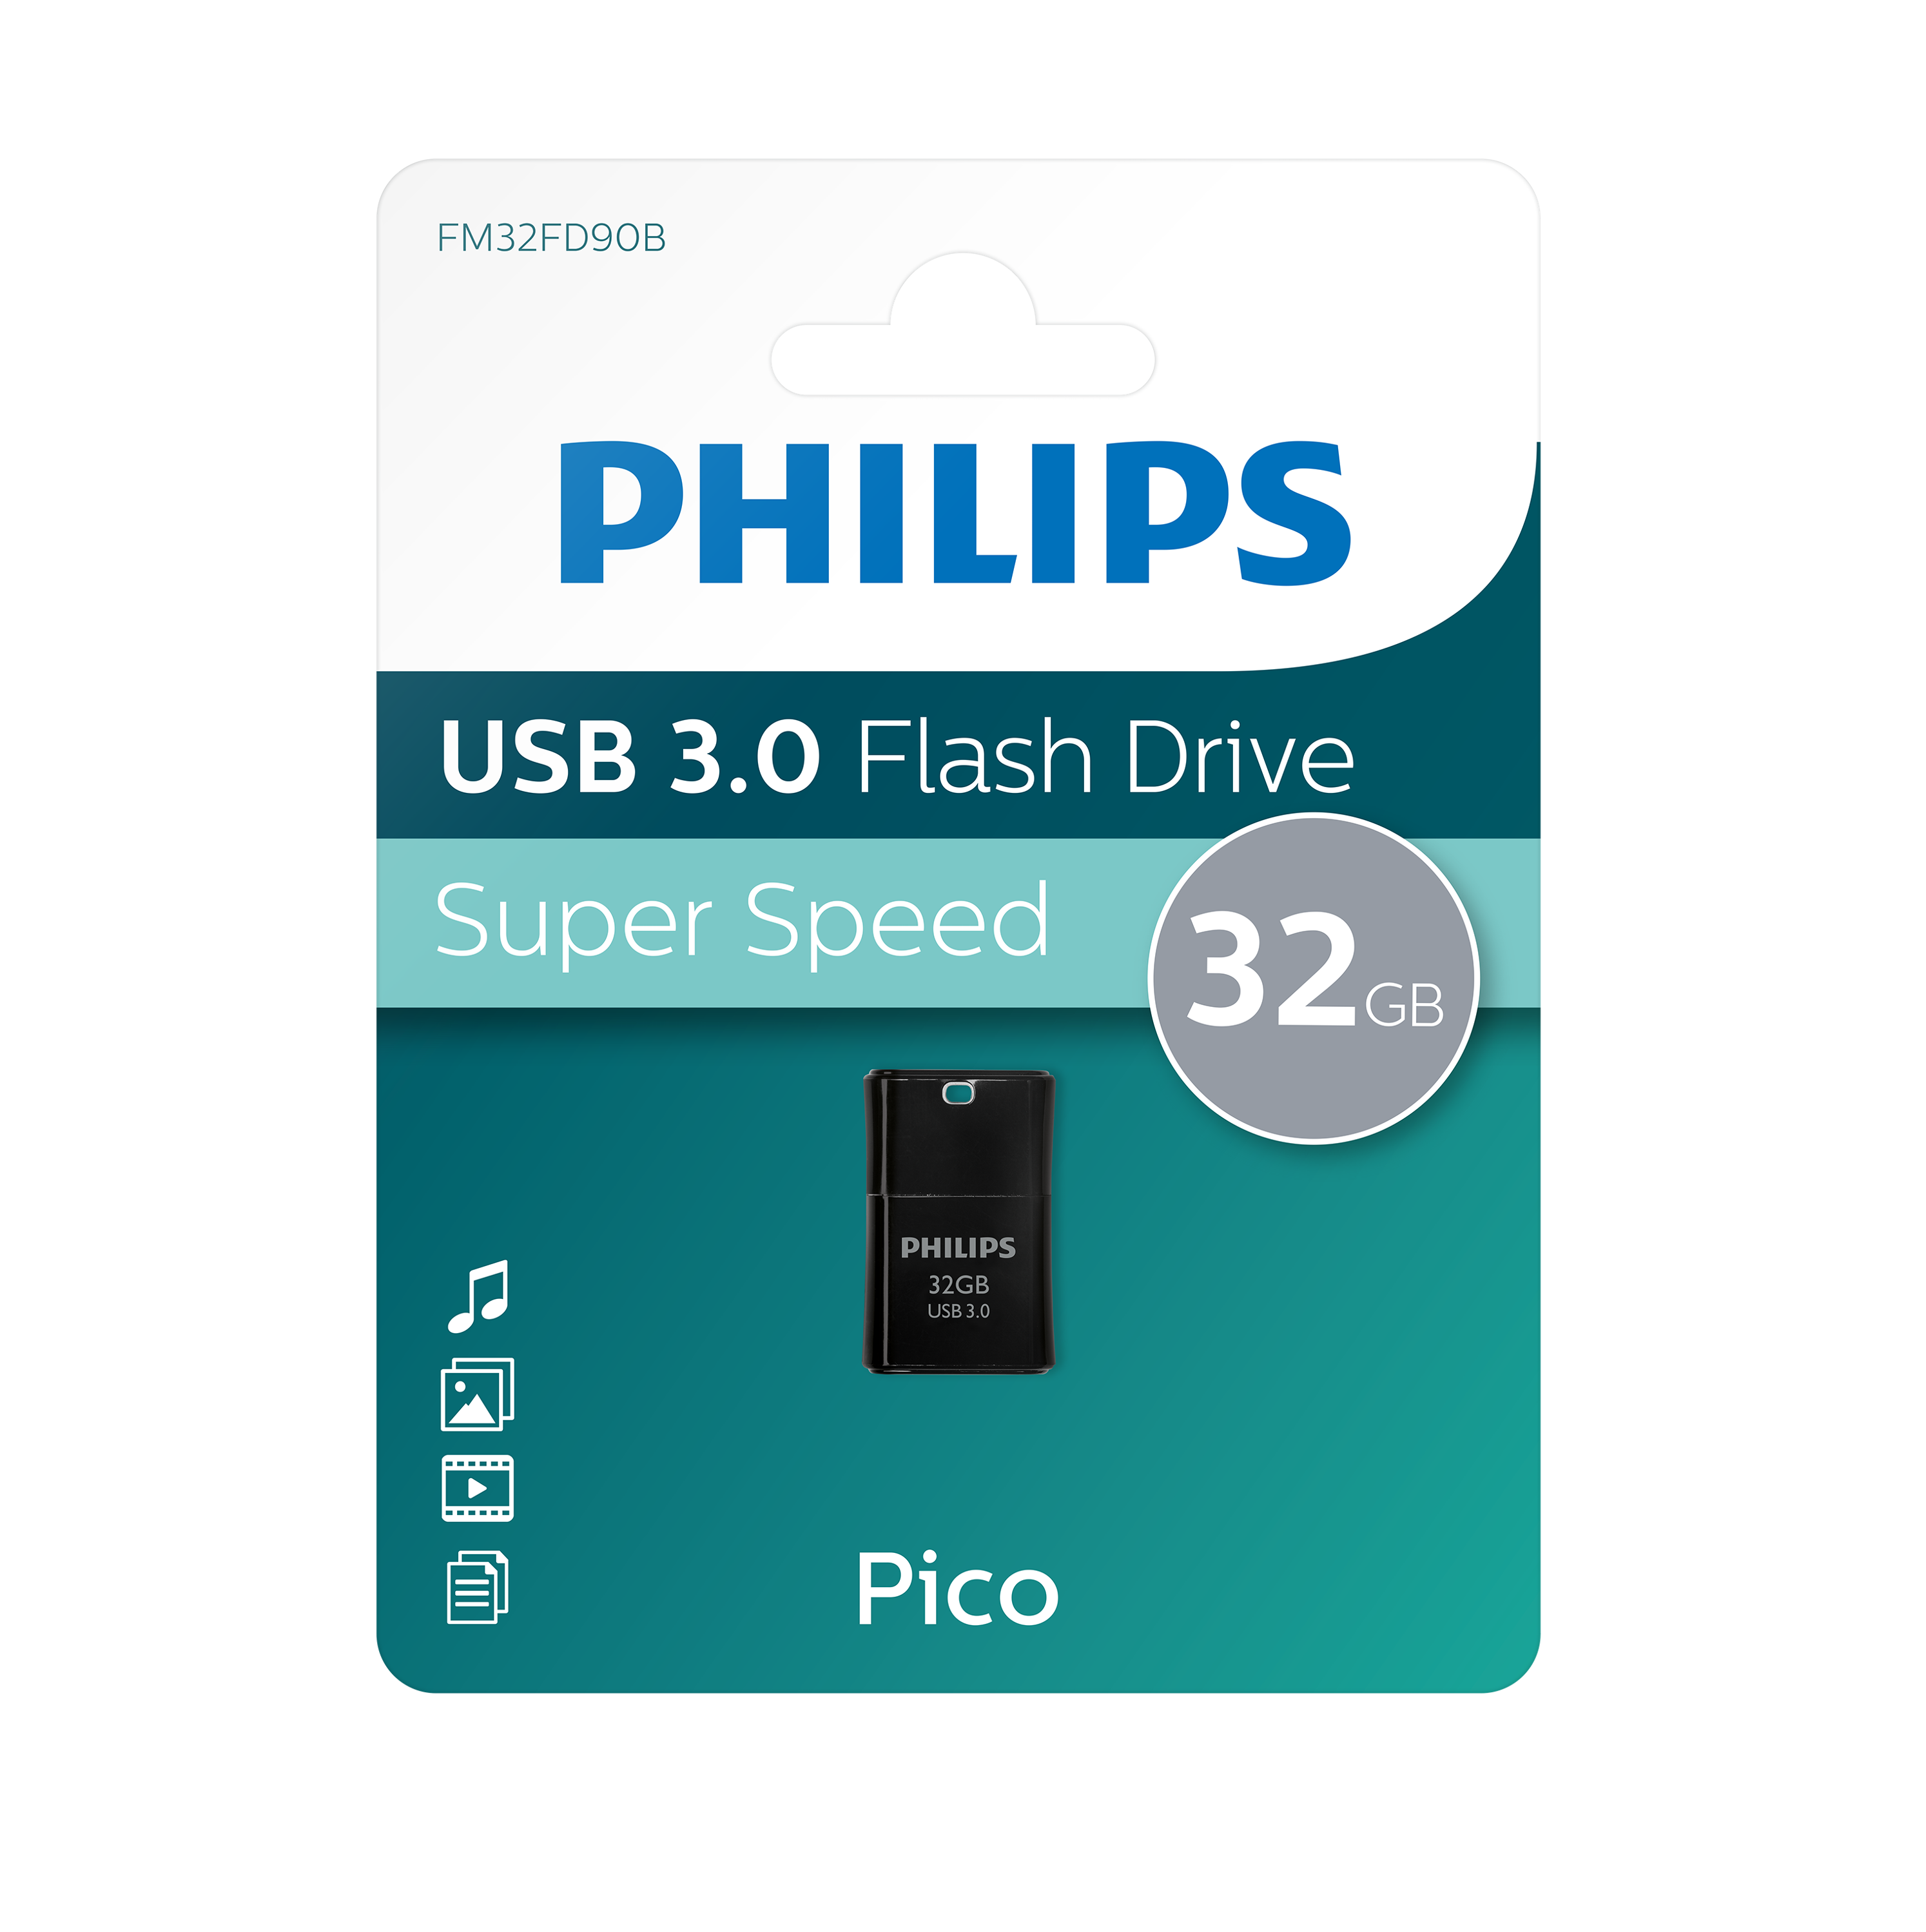 USB-Stick Pico Stick 32GB, 100MB/s Edition, 32 PHILIPS USB GB) (Schwarz,